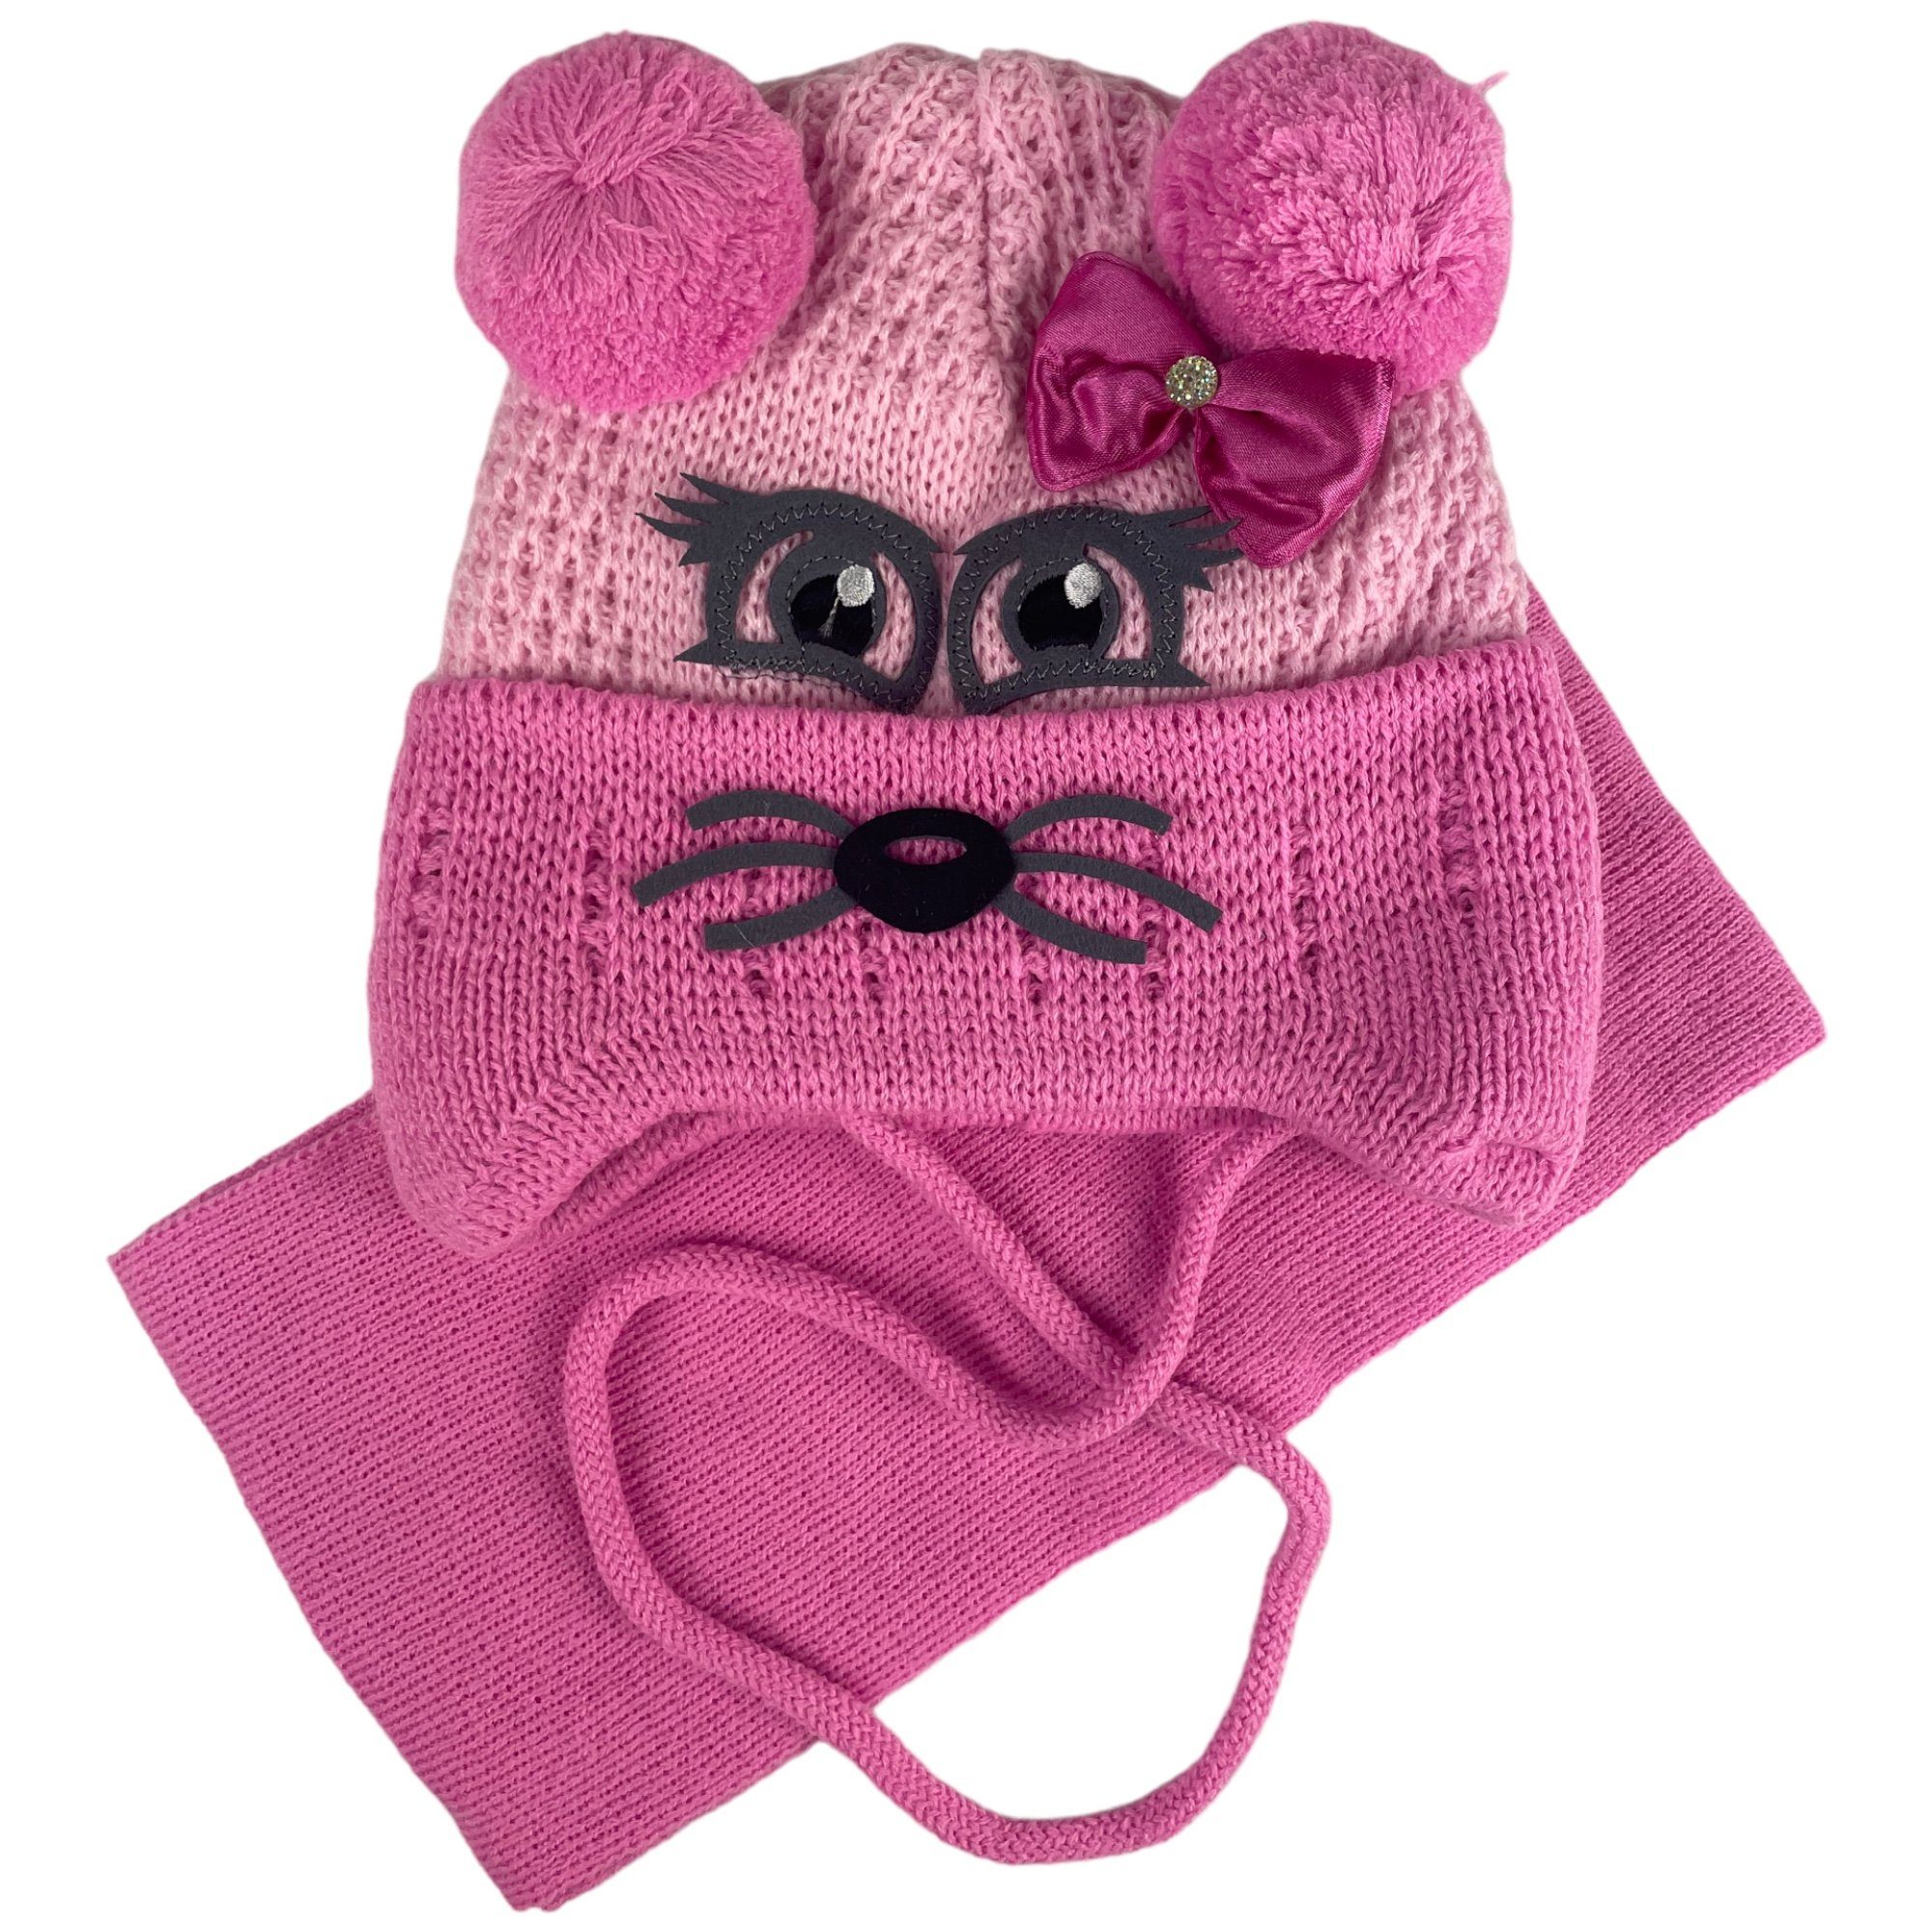 Taschen4life Mütze & Schal Kinder Mütze & Schal Set KK11 (2 teiliges Set) mit Maus Gesicht und Bommel Ohren rosa/rosa